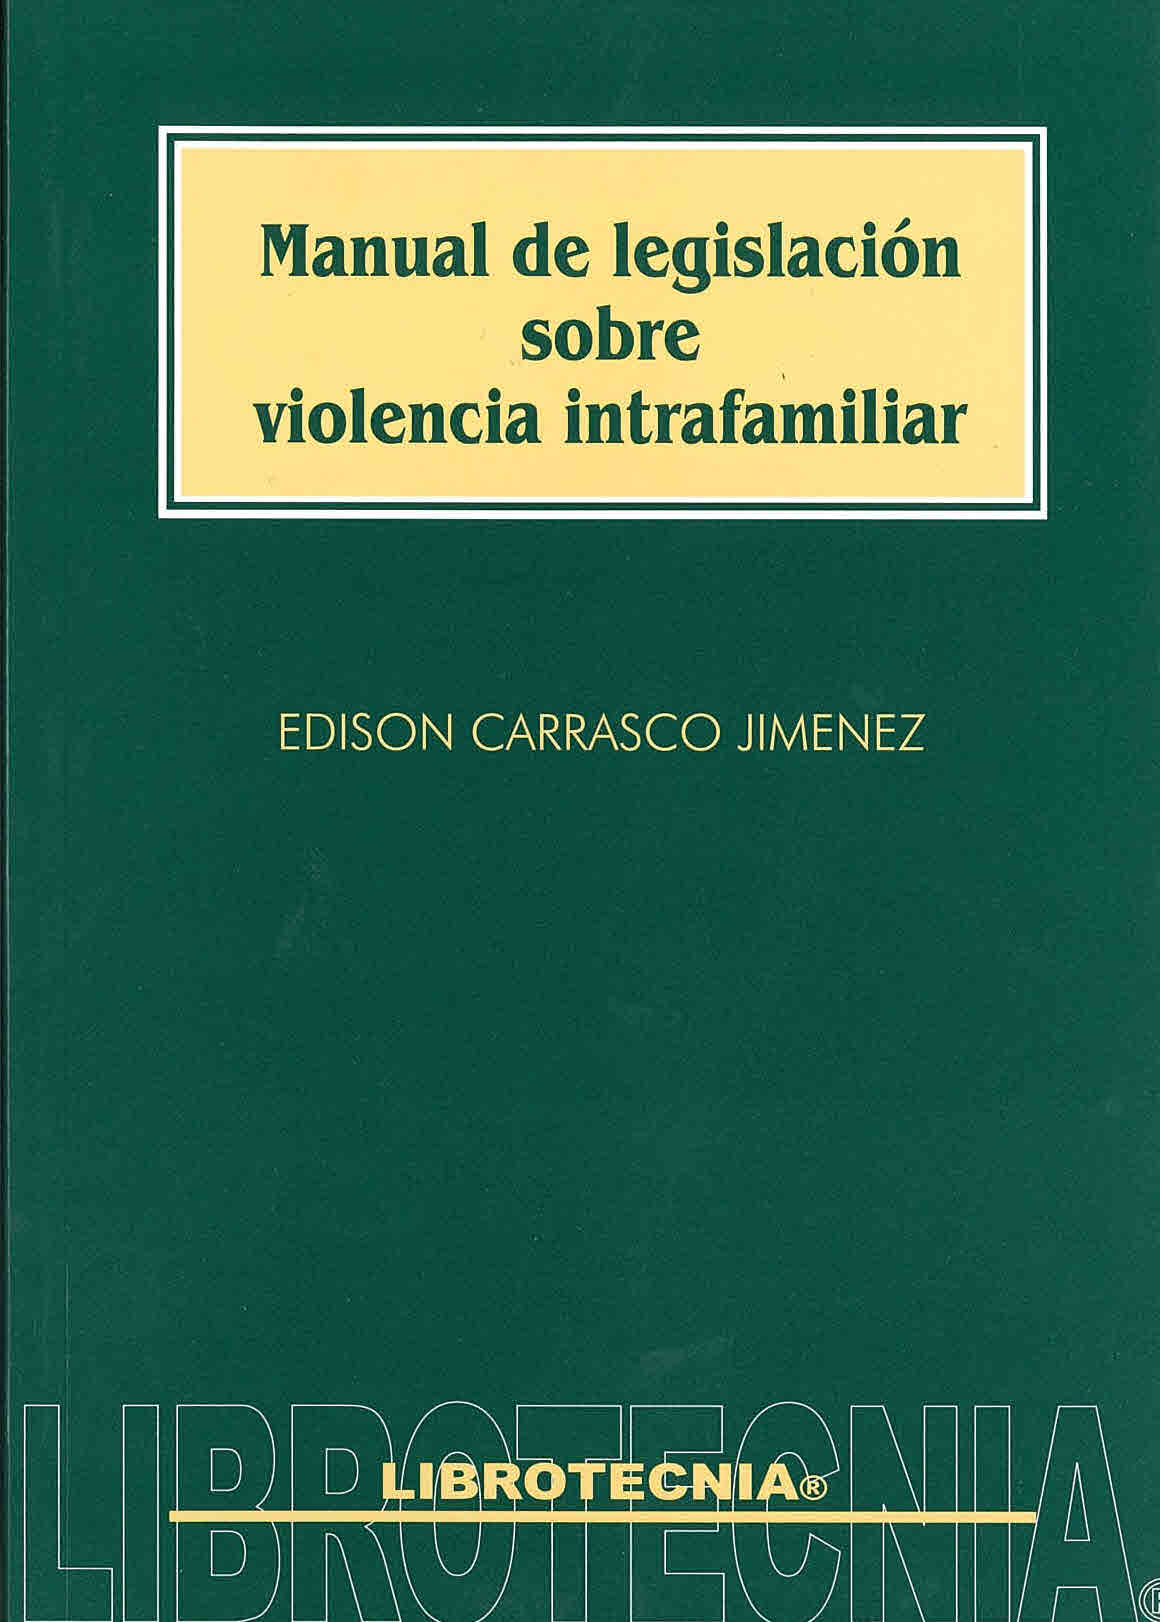 Manual de legislación sobre violencia intrafamiliar